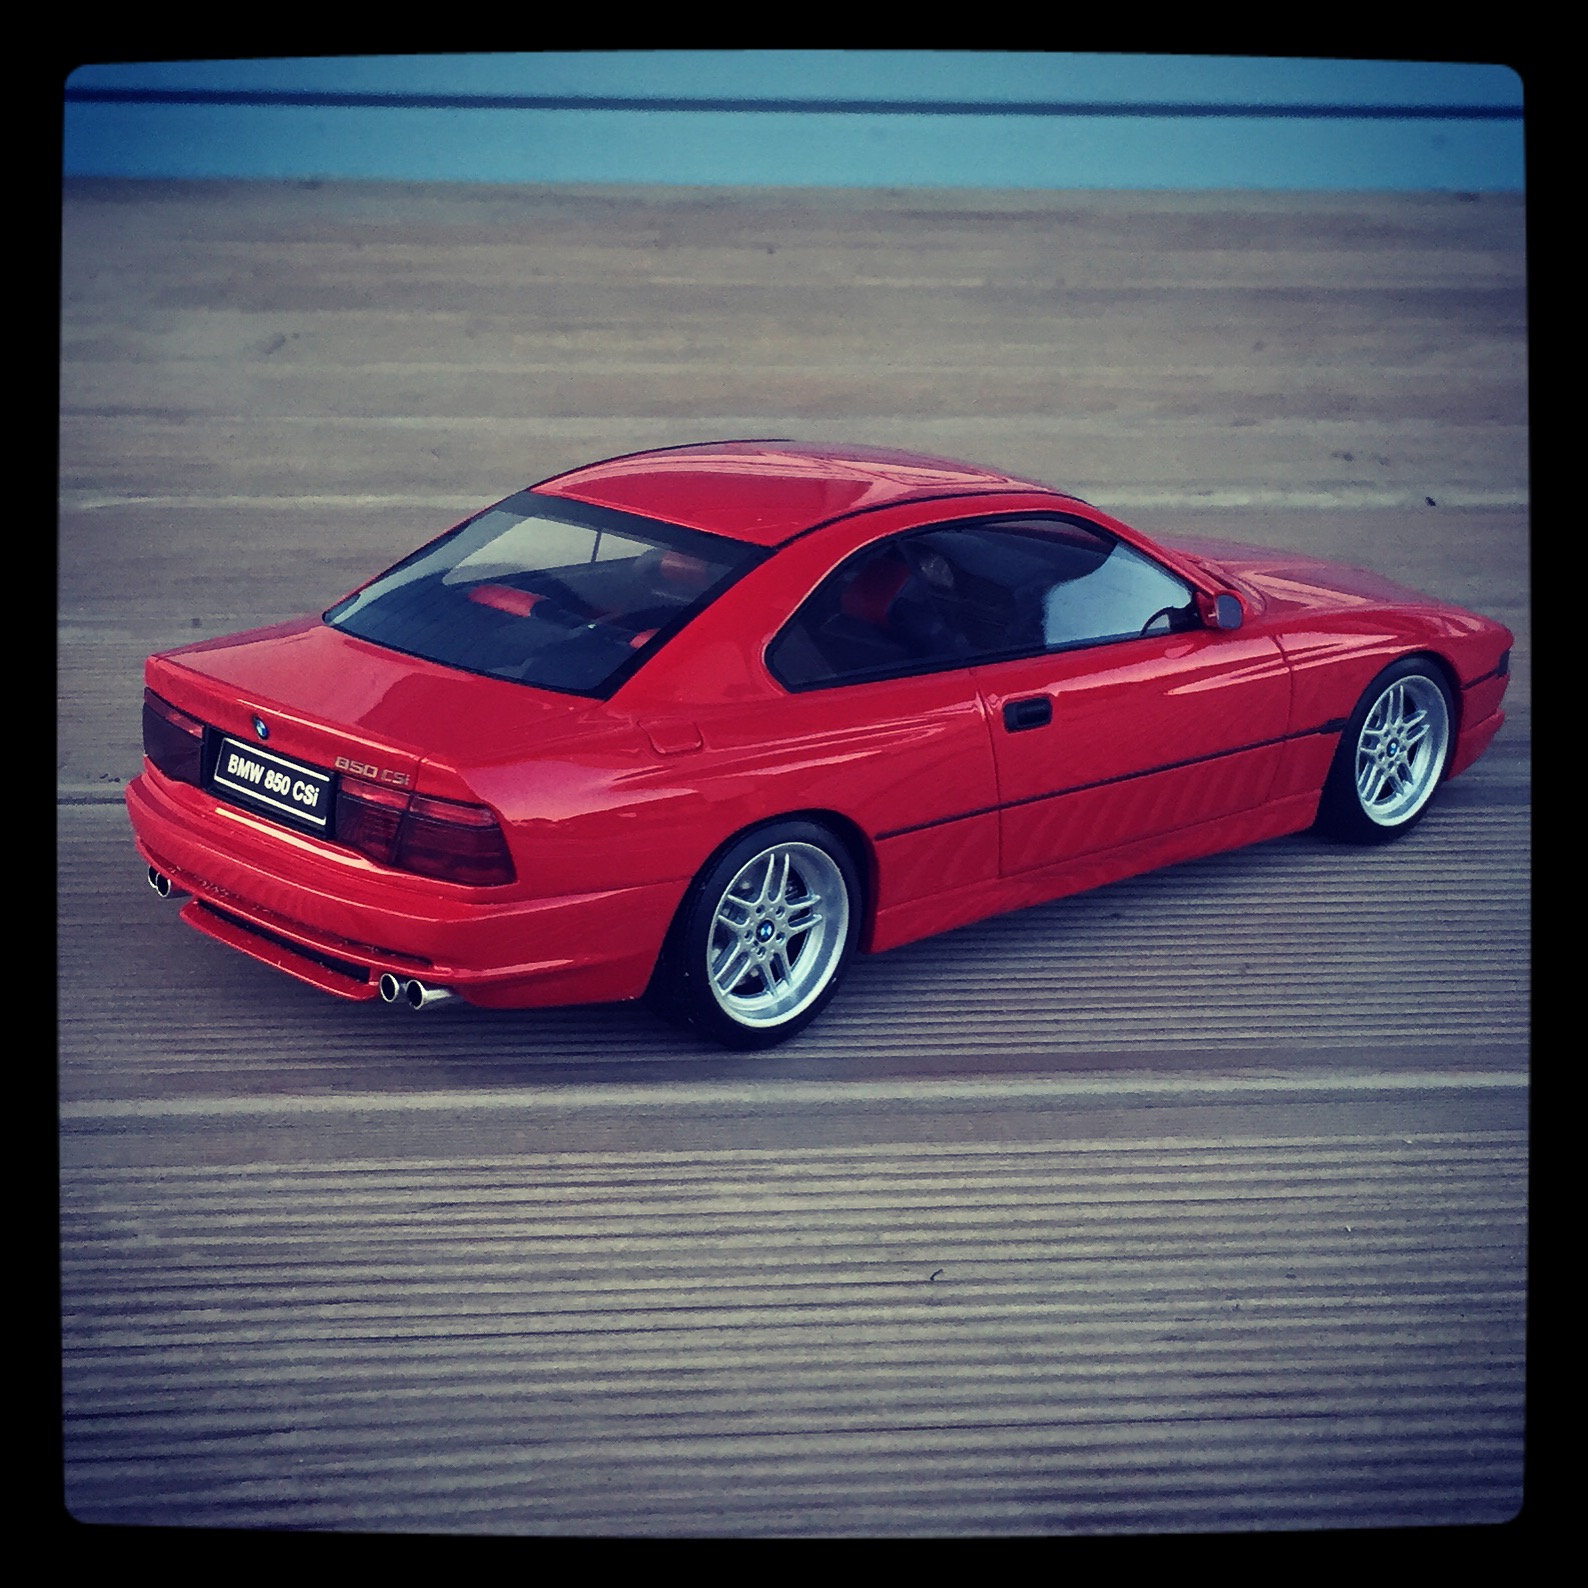 BMW 850 CSi (E31) red, le 1166 of 3,000pcs. (otto)